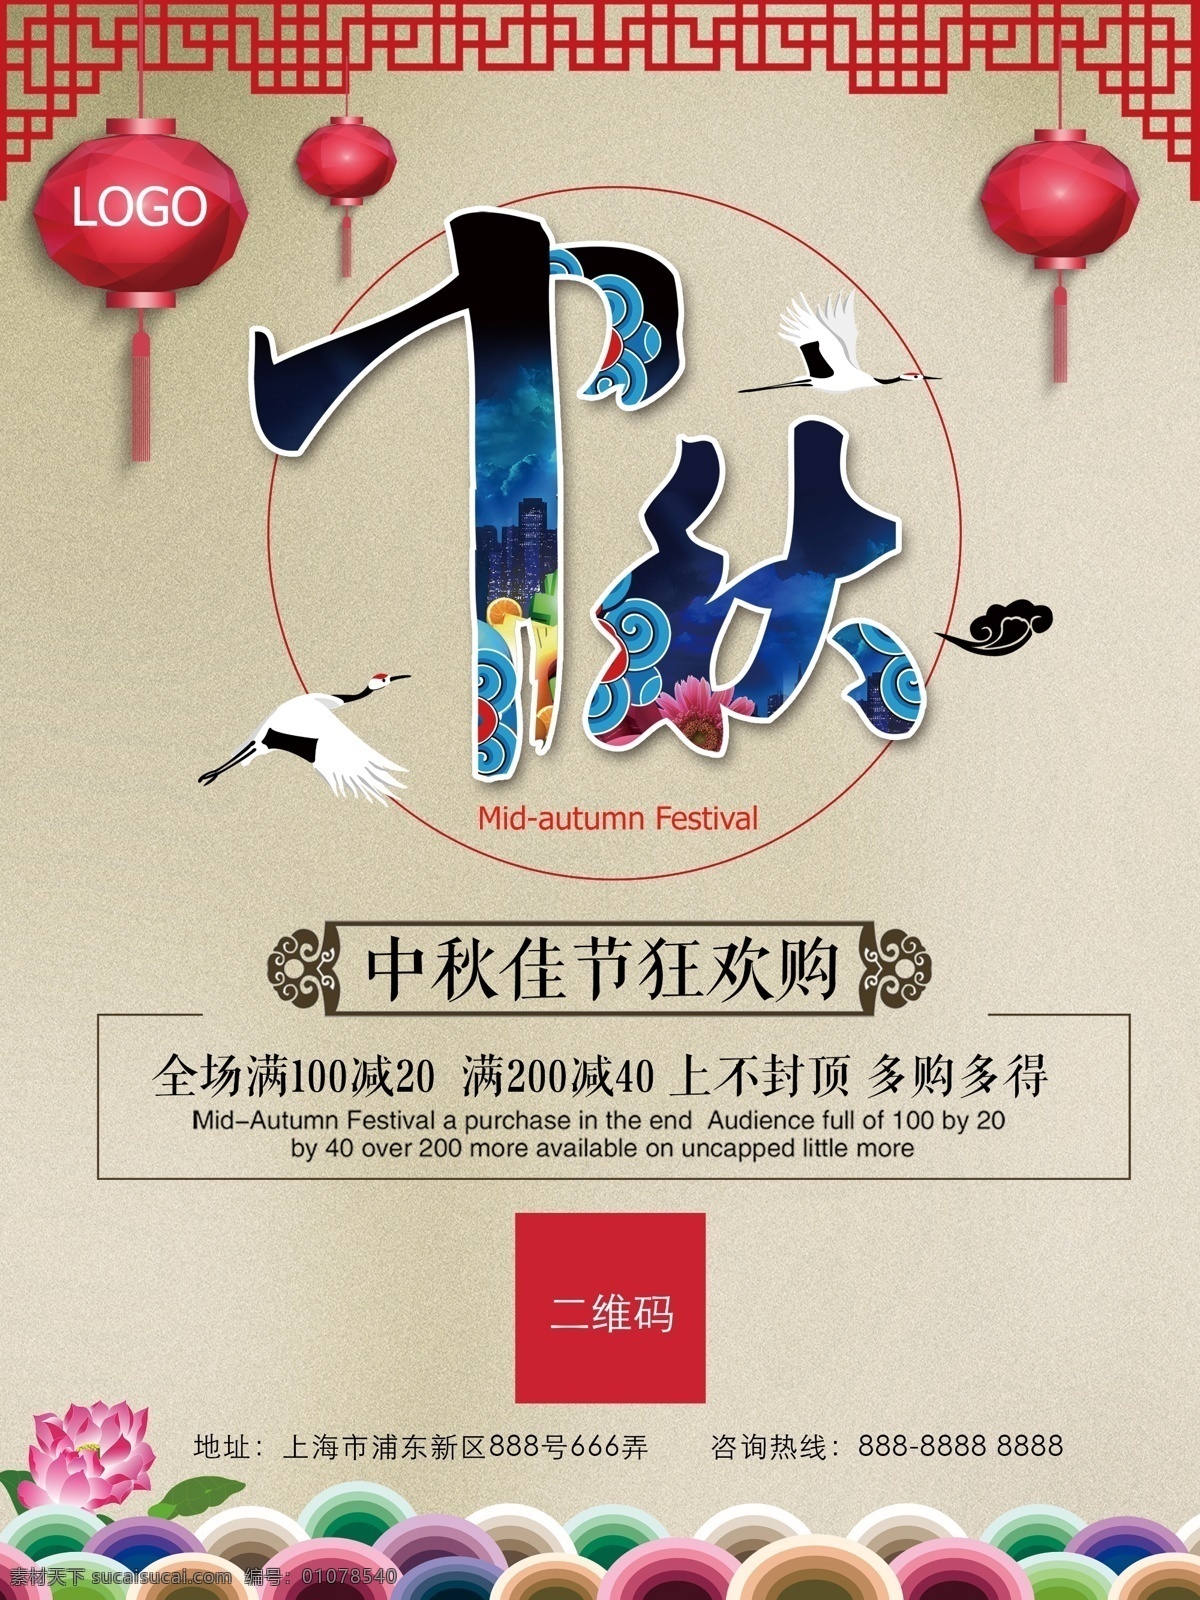 传统节日 中秋节 商业促销 海报 灯笼 中国风 荷花 白鹭 促销海报